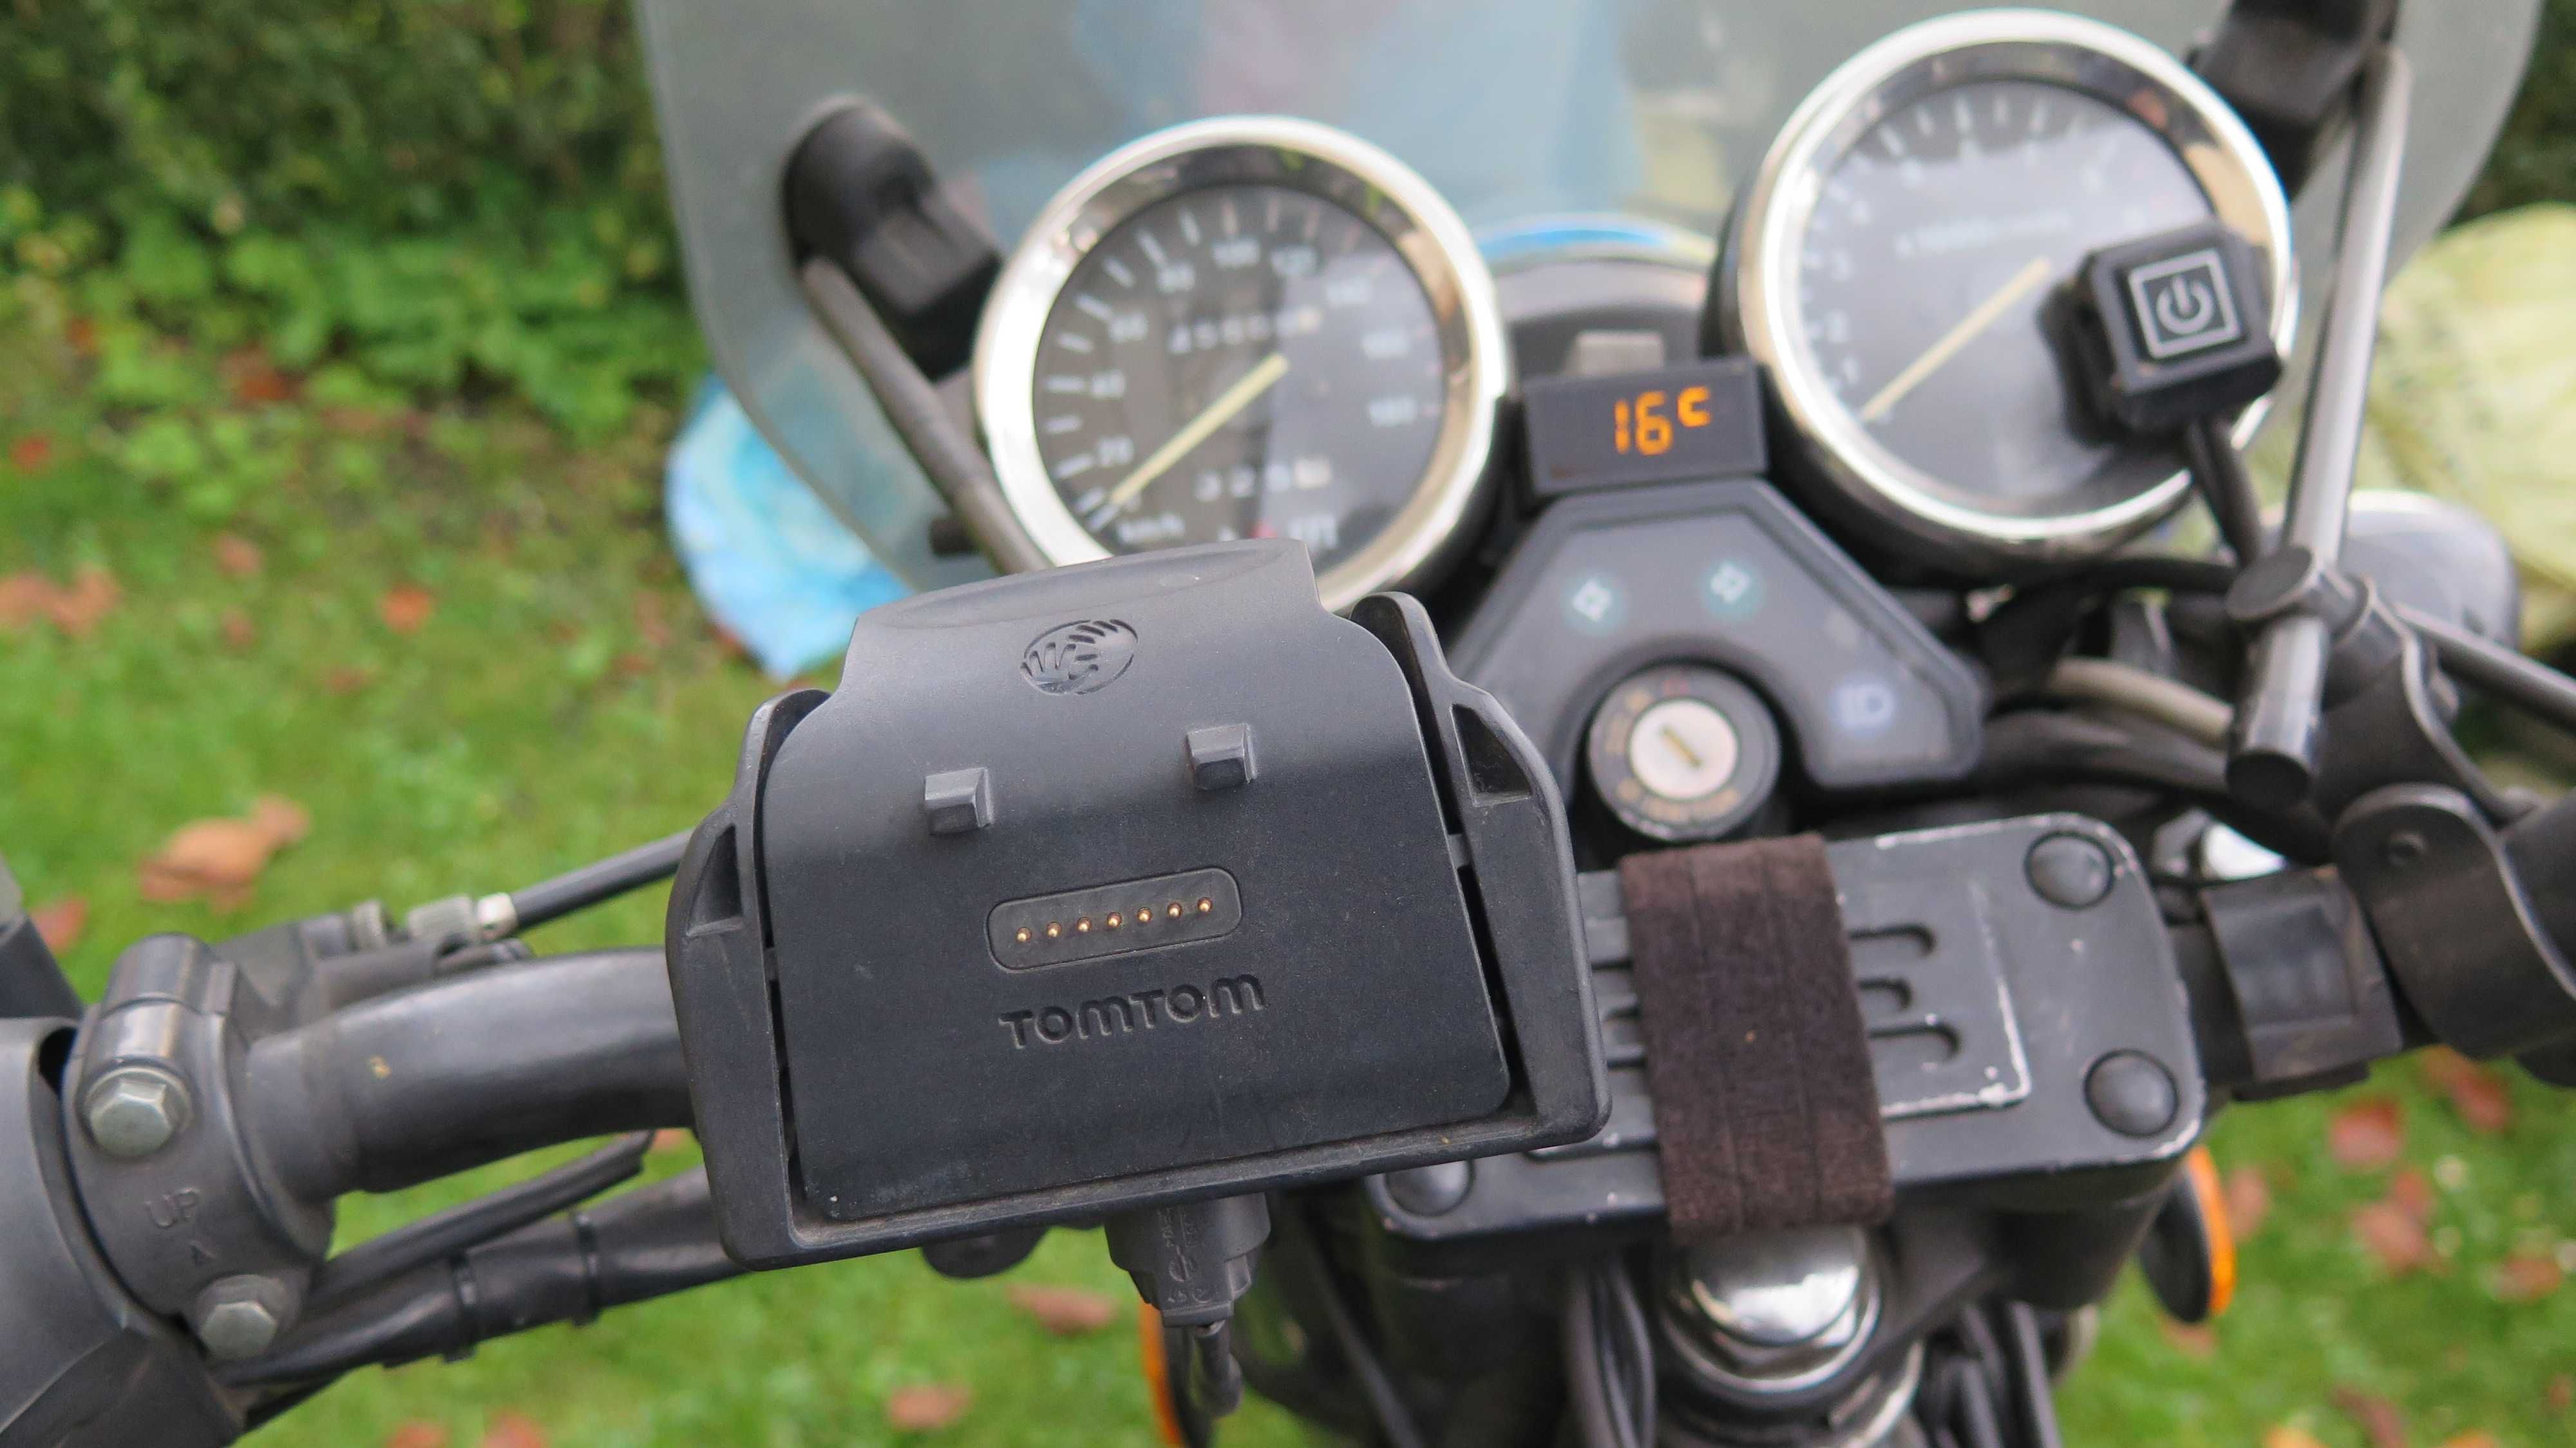 Motocykl Junak M20 - SPT350 rok 2012